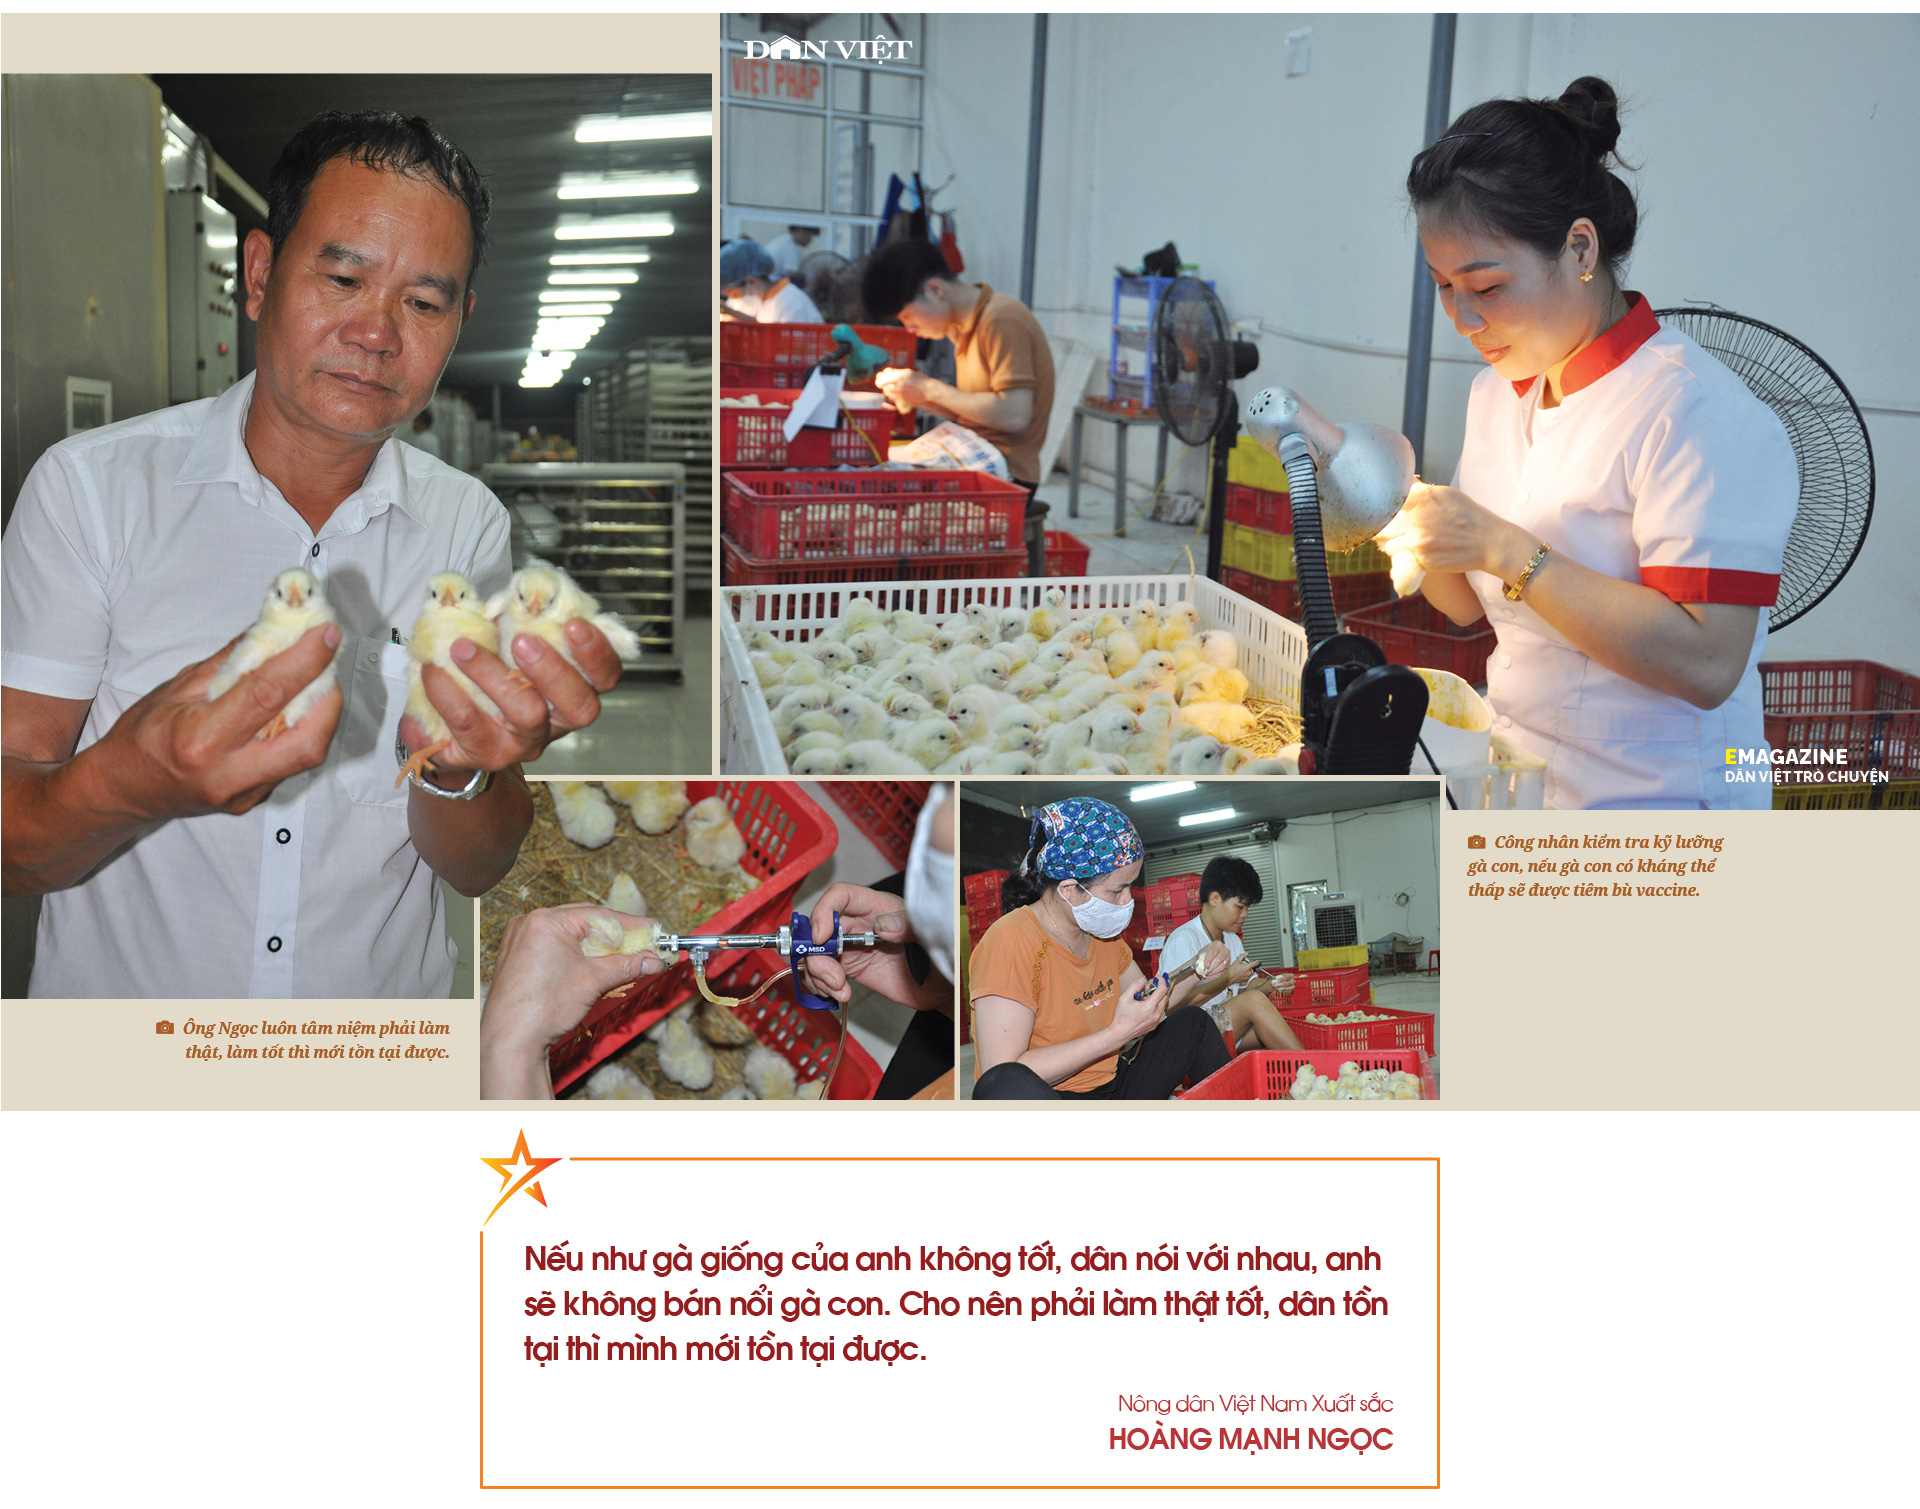 Nông dân Việt Nam xuất sắc Hoàng Mạnh Ngọc: Từ sa mạc Libya đến trại gà hàng chục tỷ đồng - Ảnh 7.